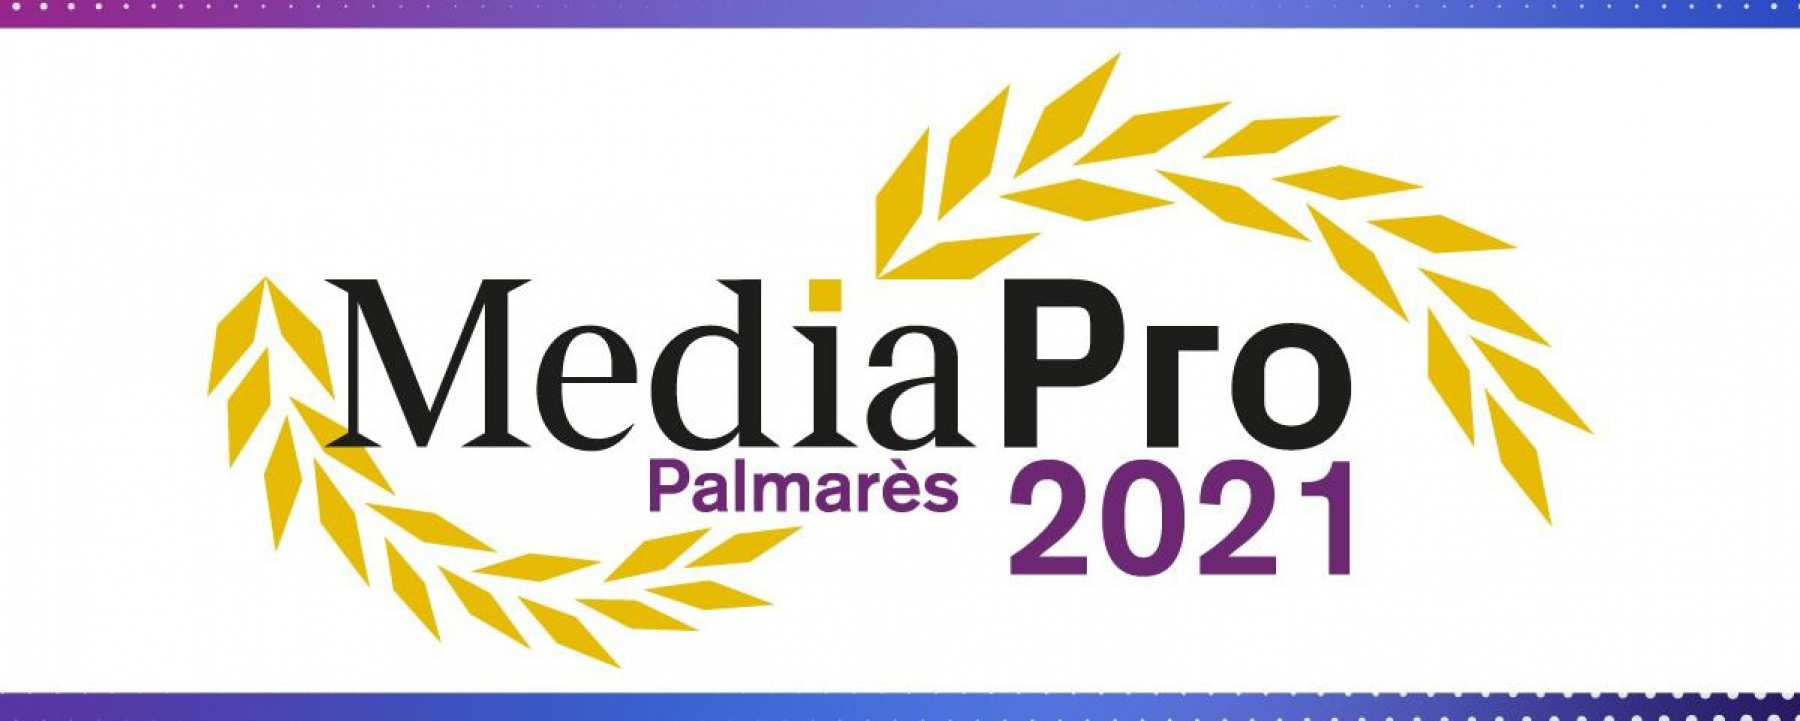 Palmarès des Médias Professionnels 2021, organisé par MediaPro le 8 avril 2021